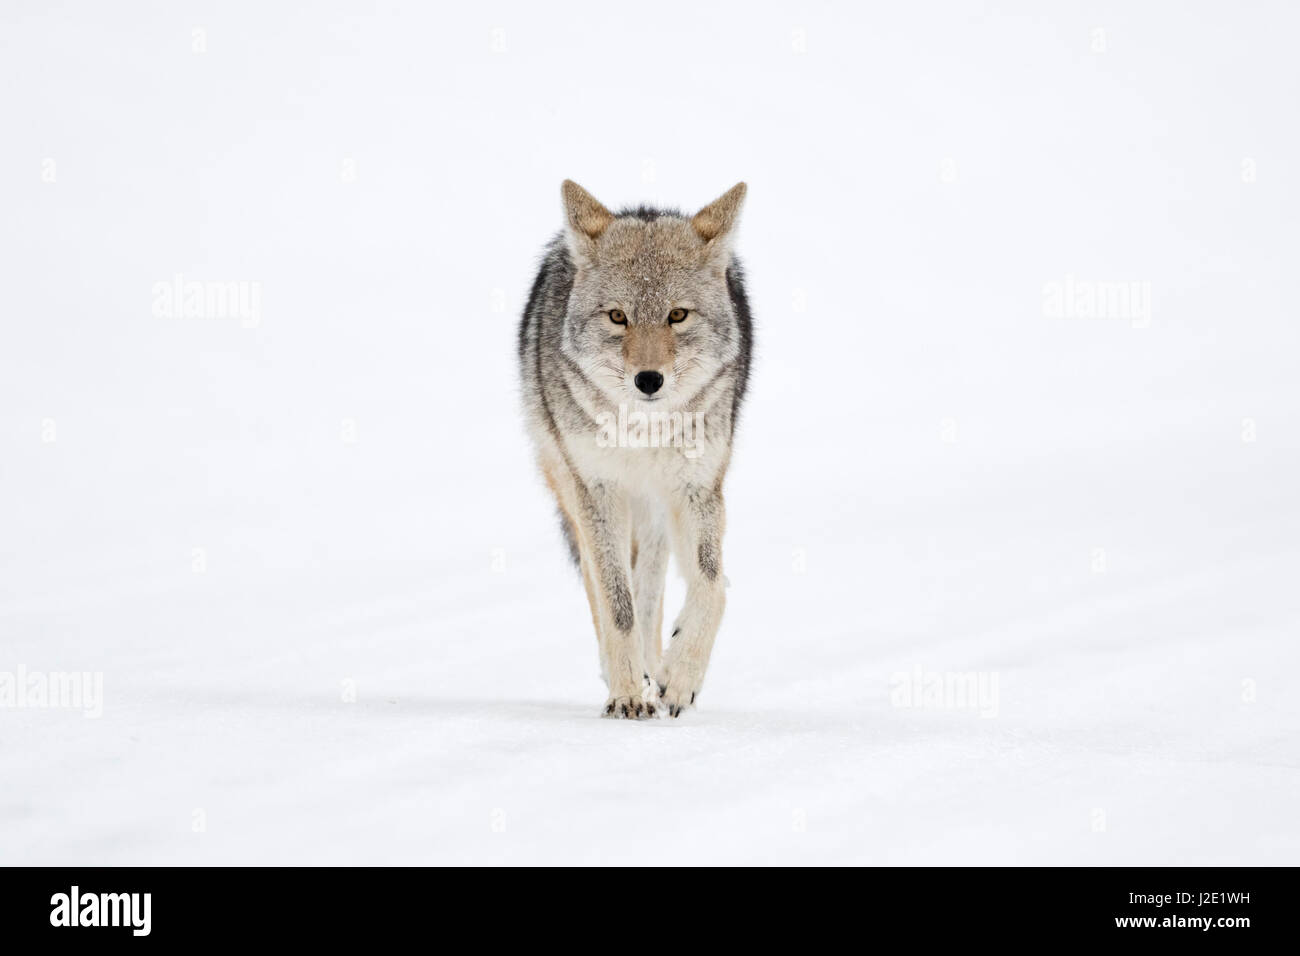 / Kojote Coyote ( Canis latrans ) en invierno, caminando directamente hacia el fotógrafo, manteniendo el contacto visual, la fotografía frontal, Parque Nacional Yellowstone, Wyoming, EE.UU. Foto de stock